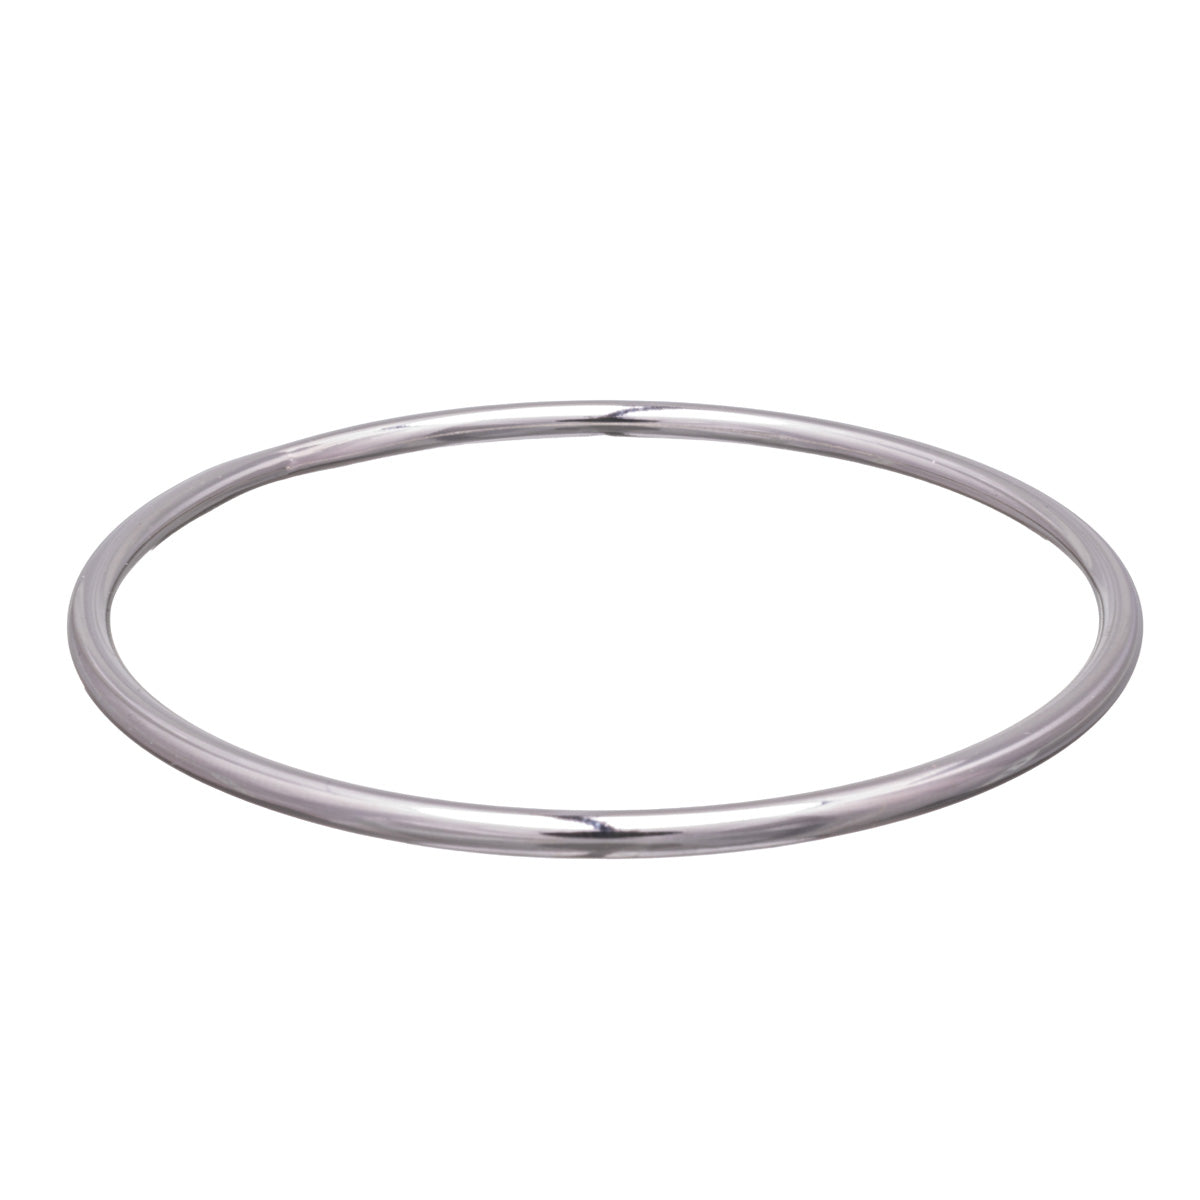 Steel narrow bracelet 3mm